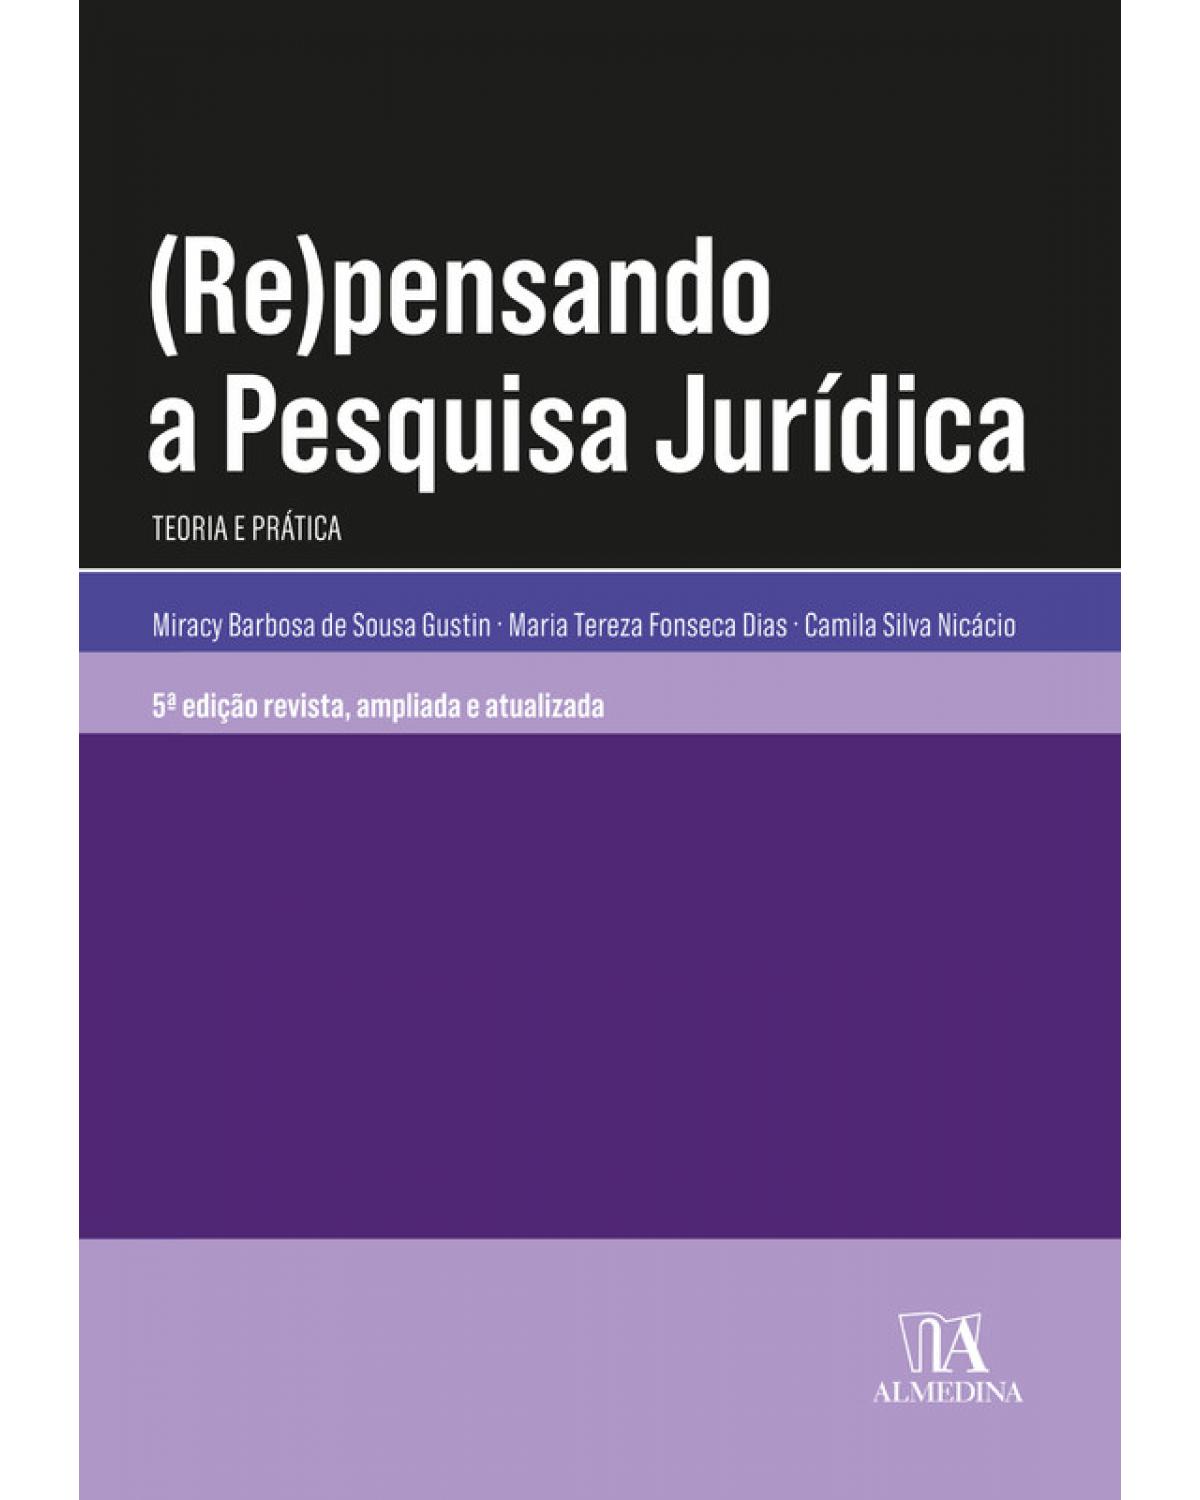 (Re)pensando a pesquisa jurídica - teoria e prática - 5ª Edição | 2020